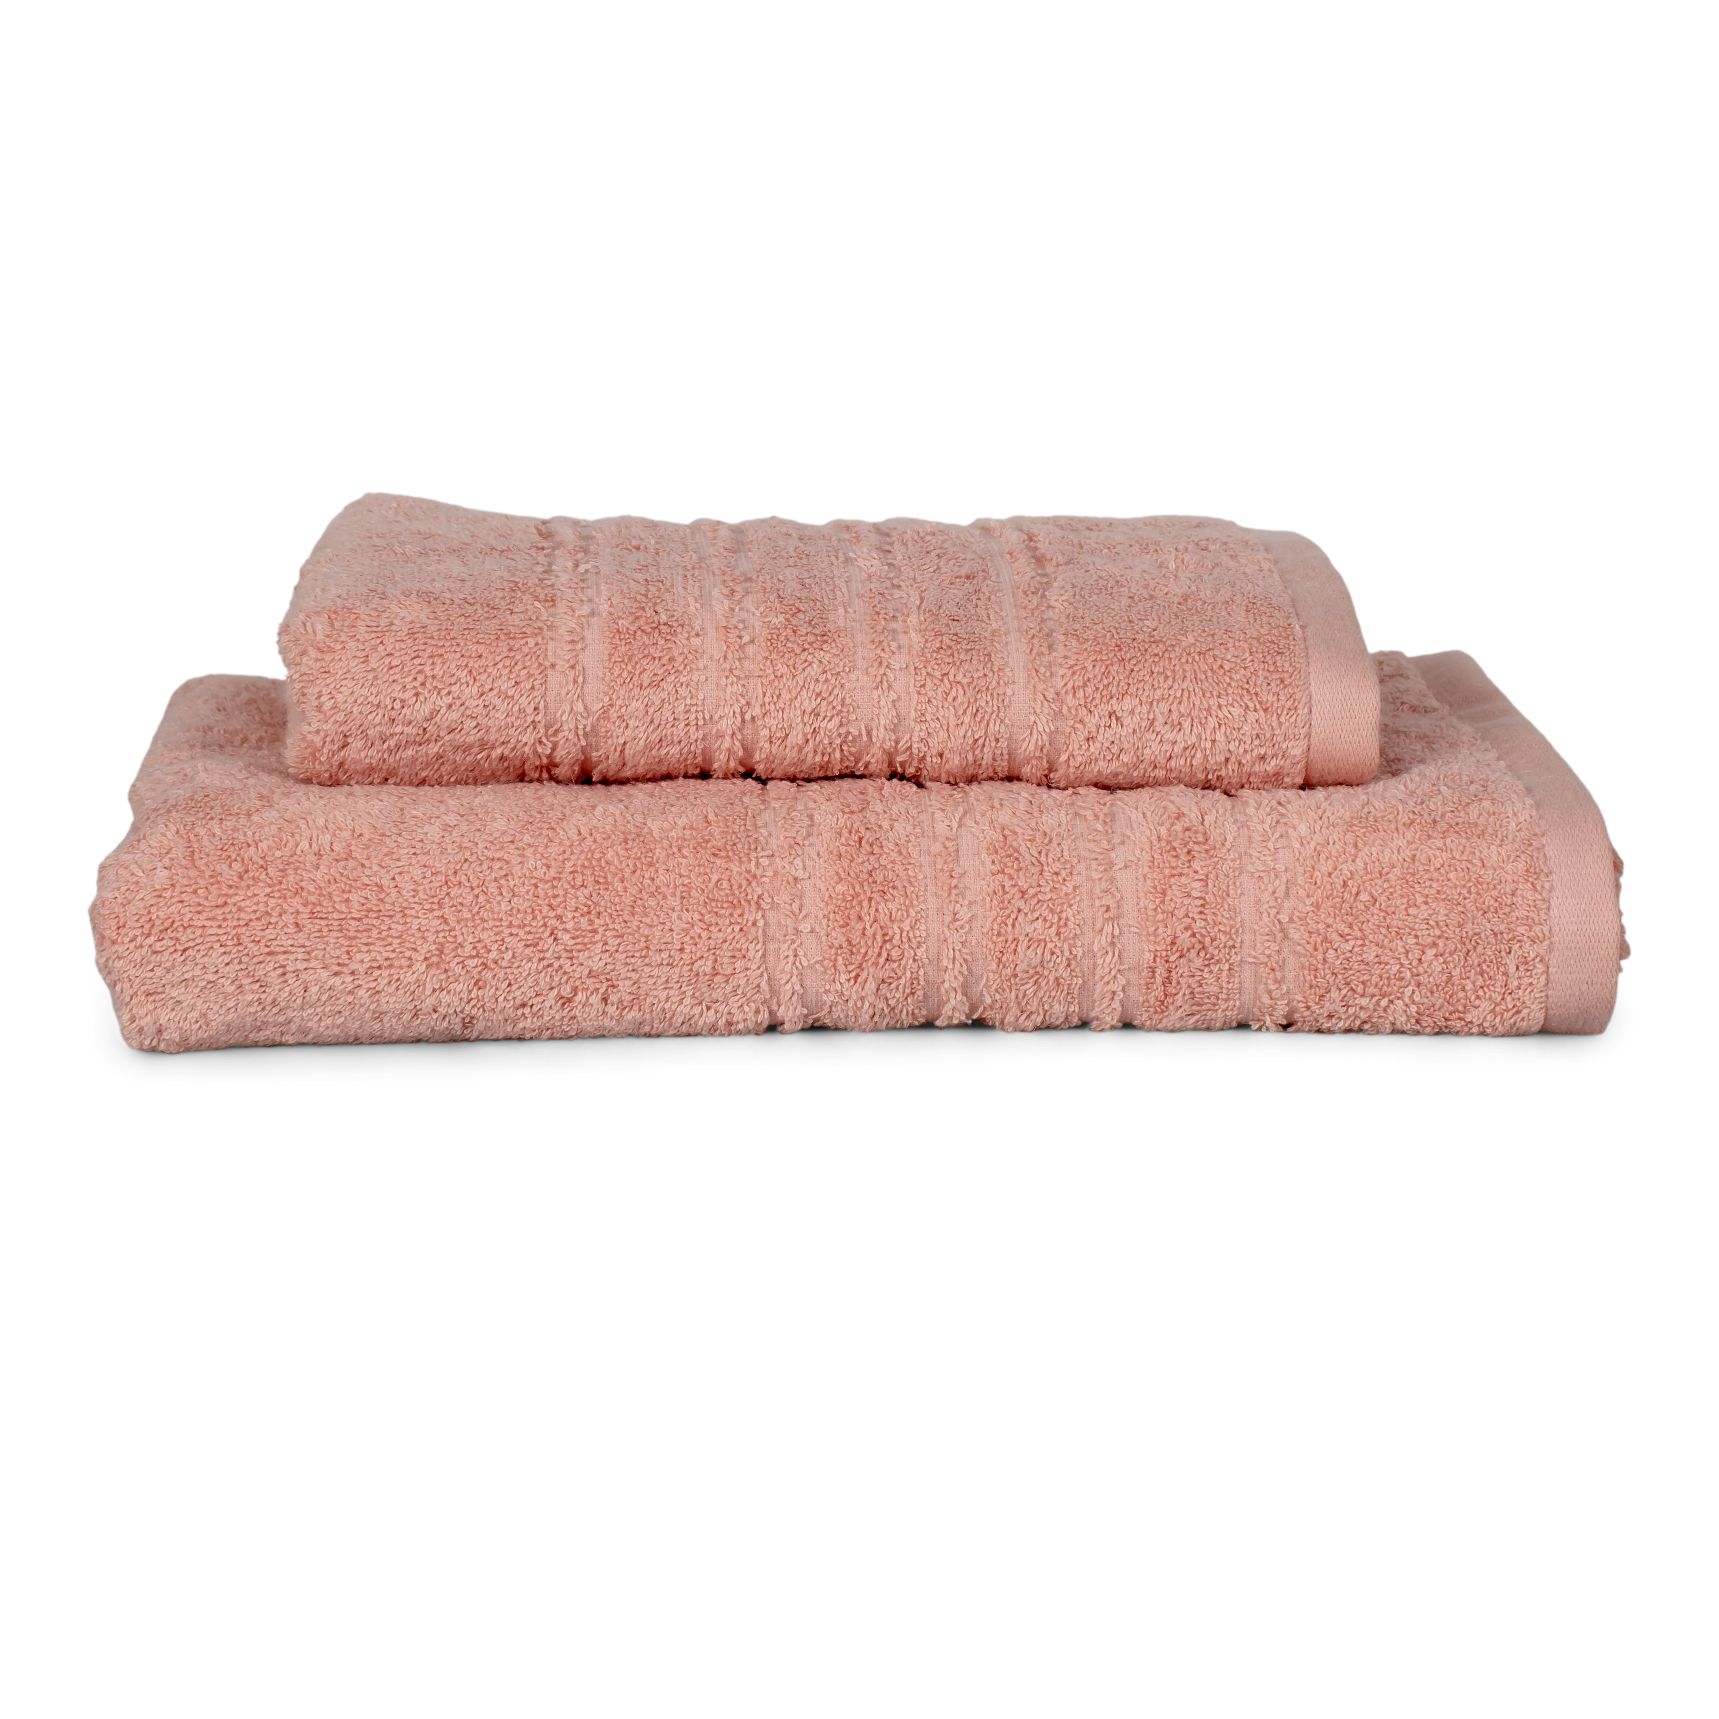 Nettle Håndklæde, Nude, 70x140 cm